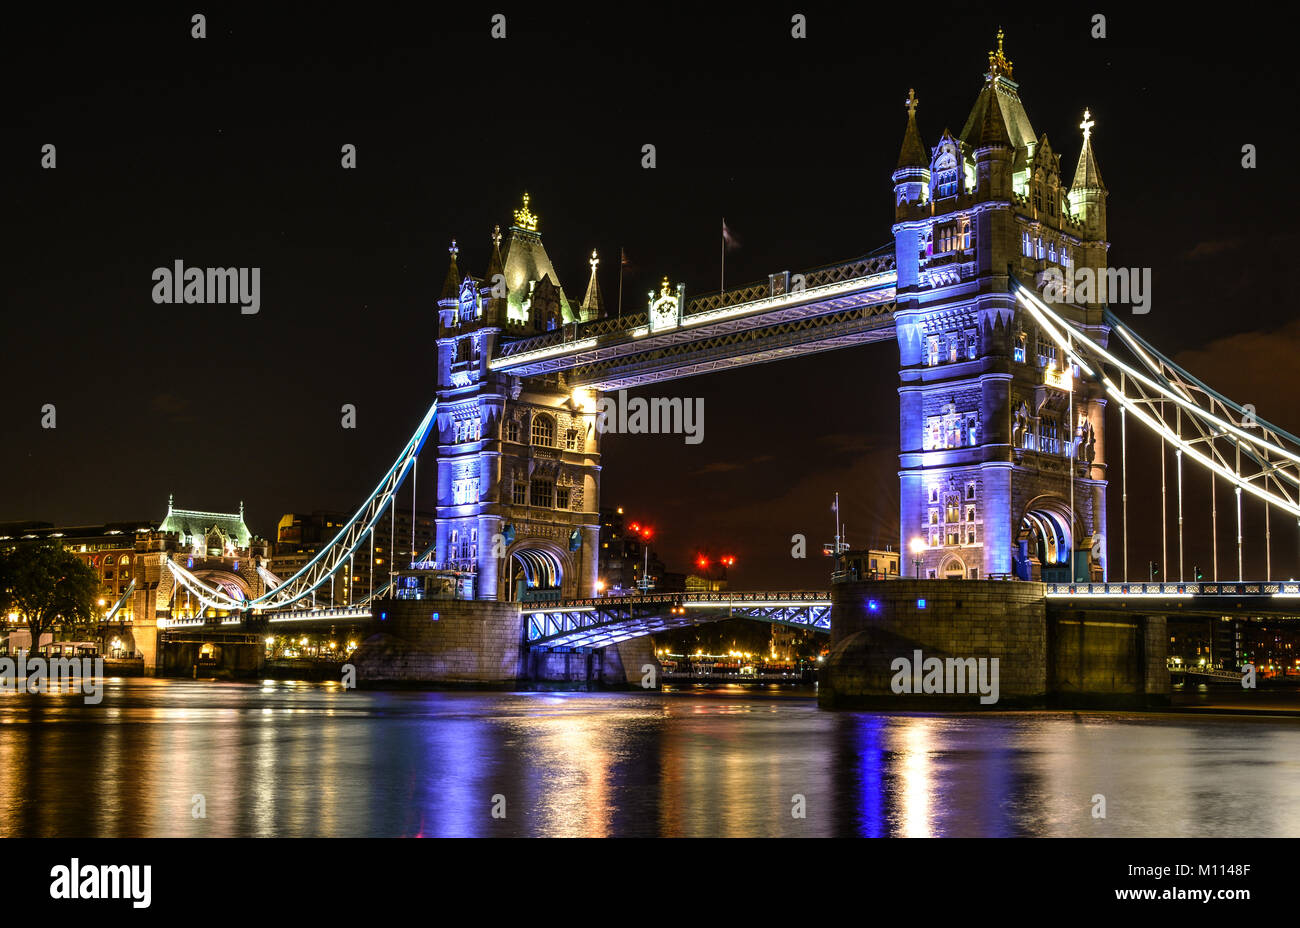 Die Tower Bridge ist eine berühmte Symbol von London, England, im Jahr 1894 auf der Themse gebaut wurde. Jeder Turm erreicht eine Höhe von 65 Metern. Stockfoto